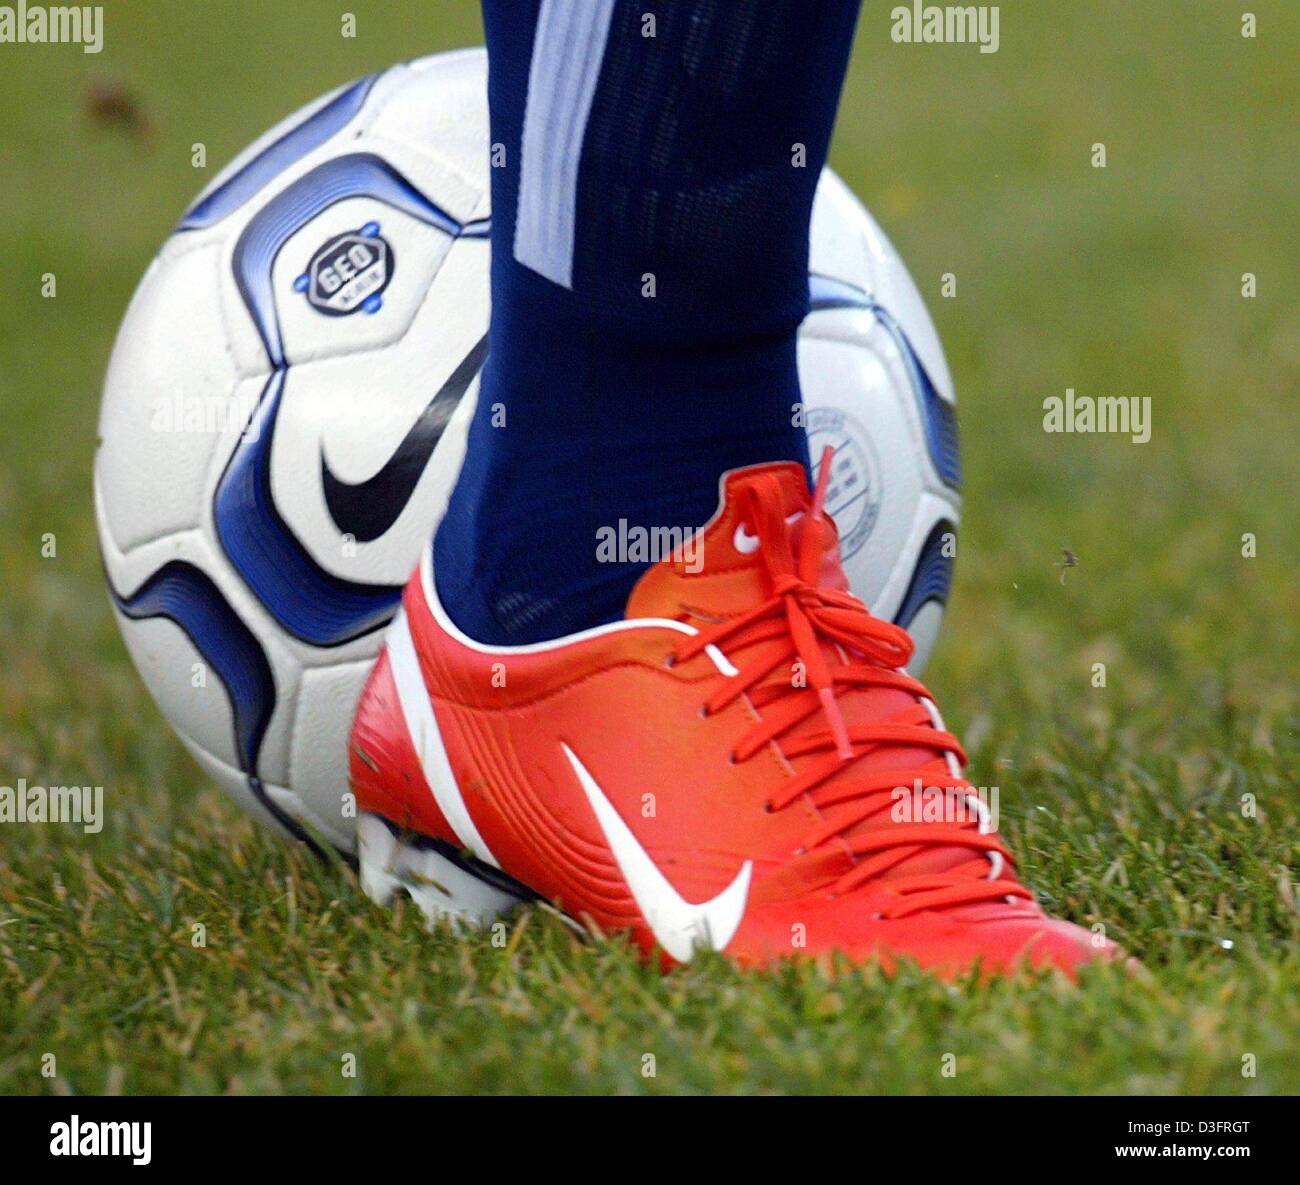 Afp) - une chaussure de soccer Nike orange vif recouvre partiellement un  ballon de soccer Nike sur un terrain de soccer à Berlin, Allemagne, 8  février 2003. Marcelinho, milieu de terrain au